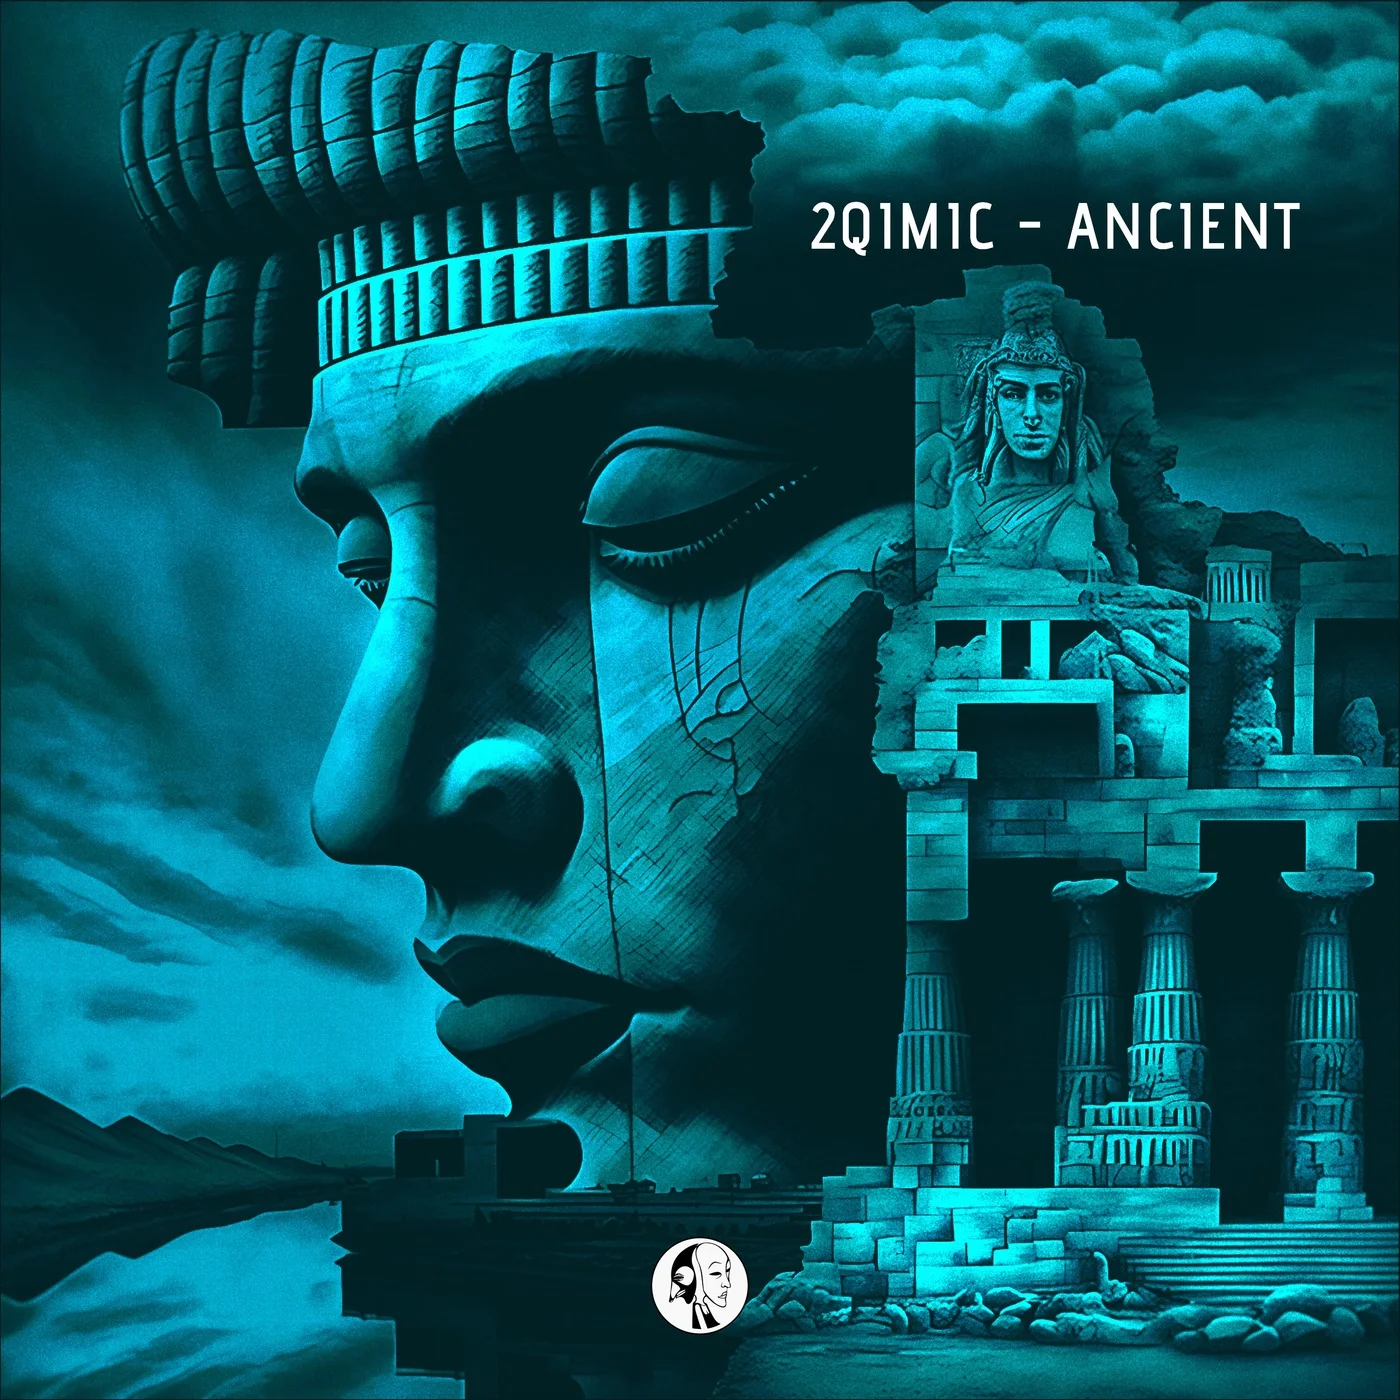 2qimic - Ancient (Mpathy Remix)